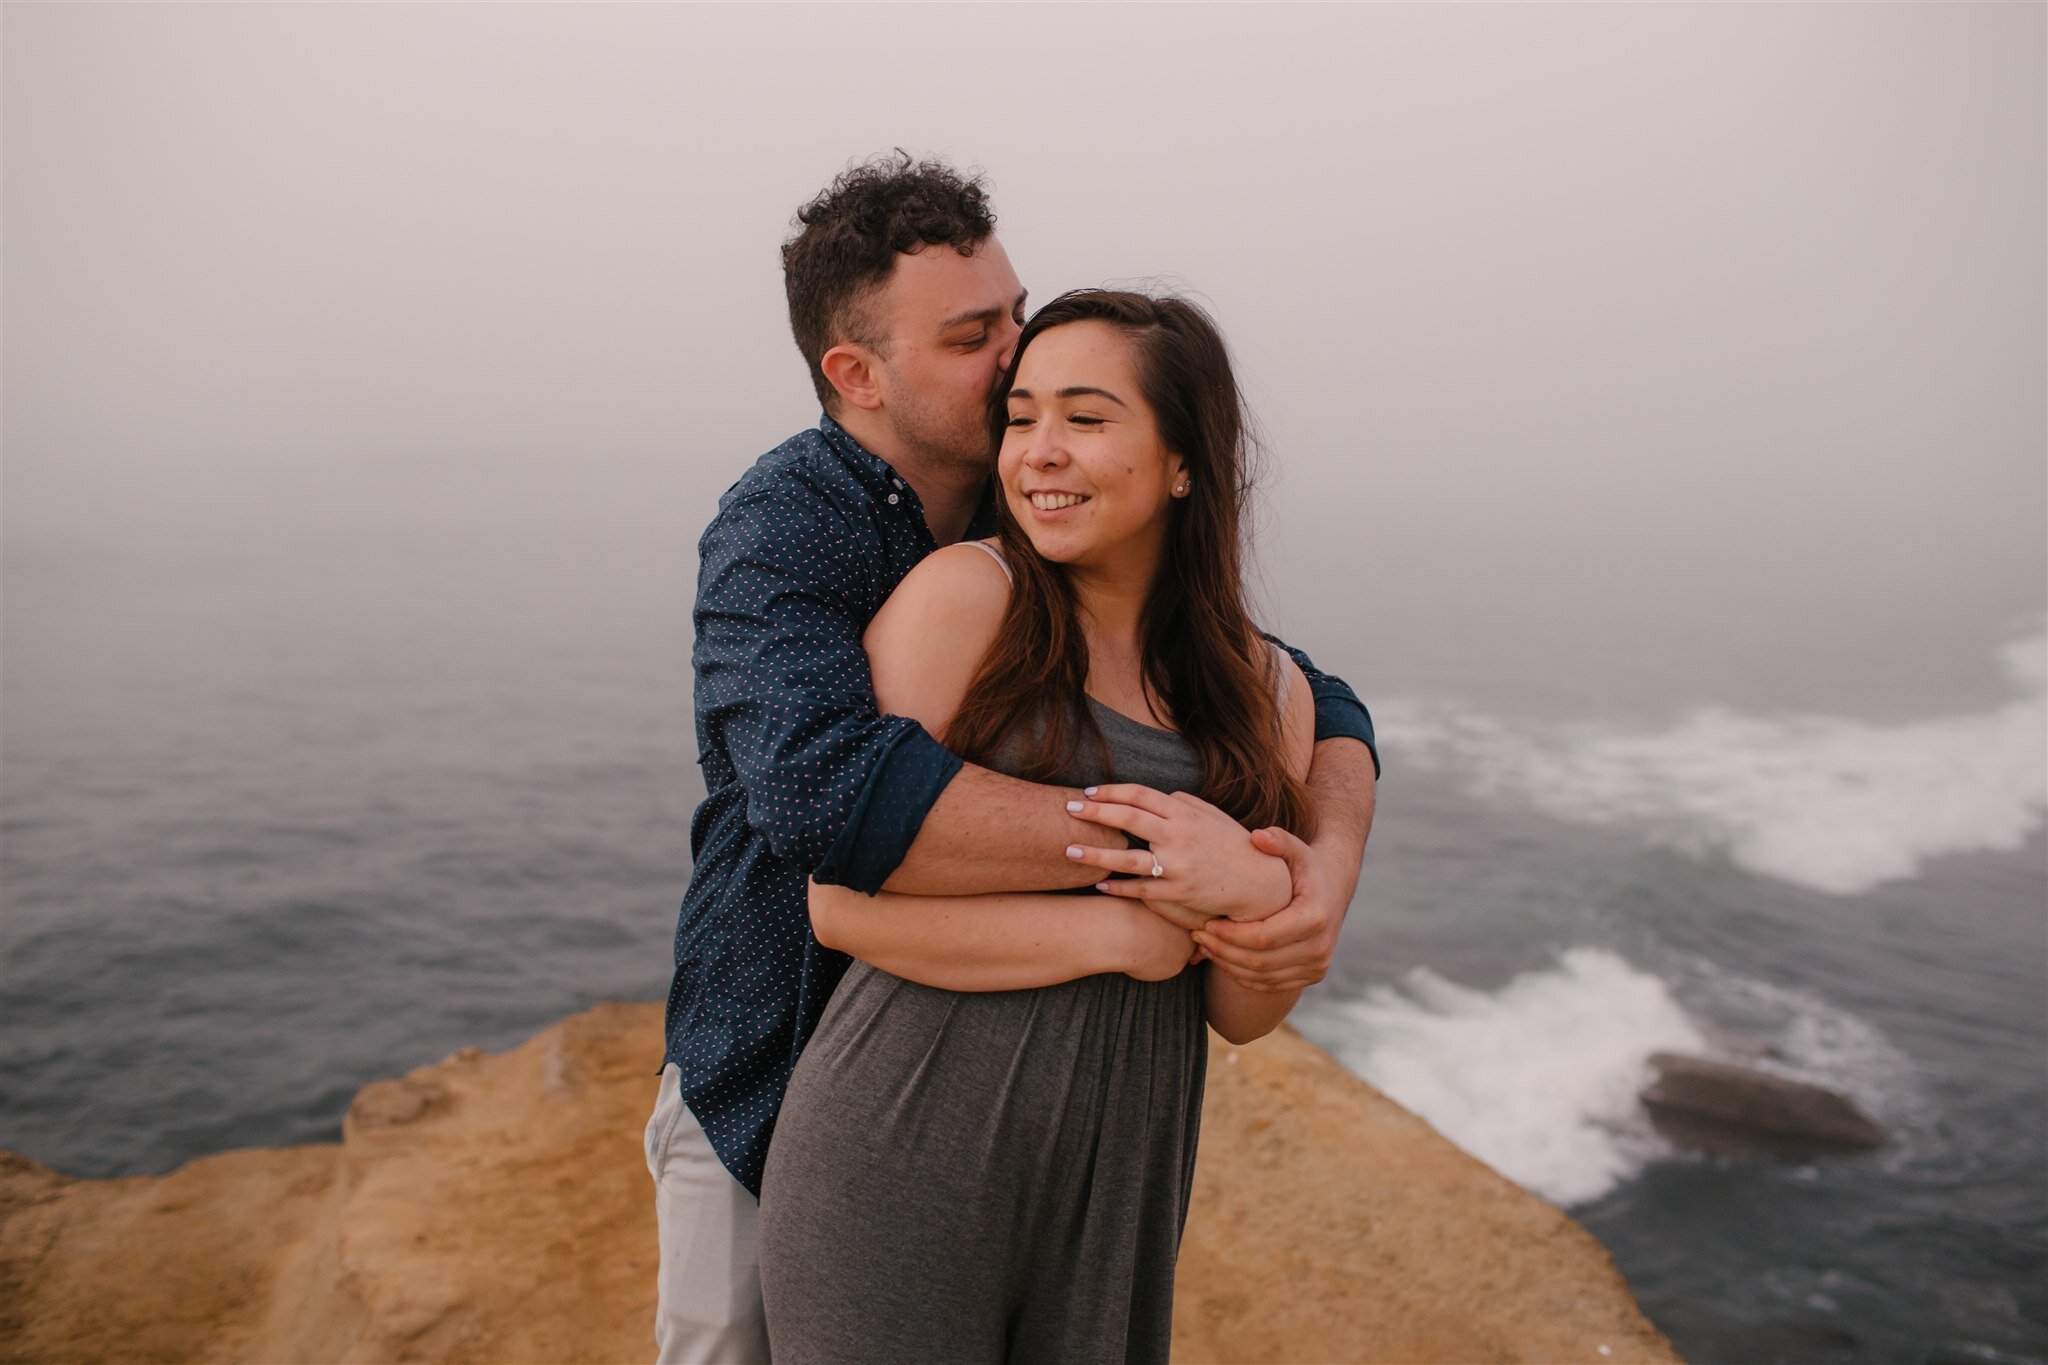 sunset-cliffs-san-diego-surprise-proposal-engagement-socal-southern-california-wedding-elopement-photographer-beach-ocean-15.jpg